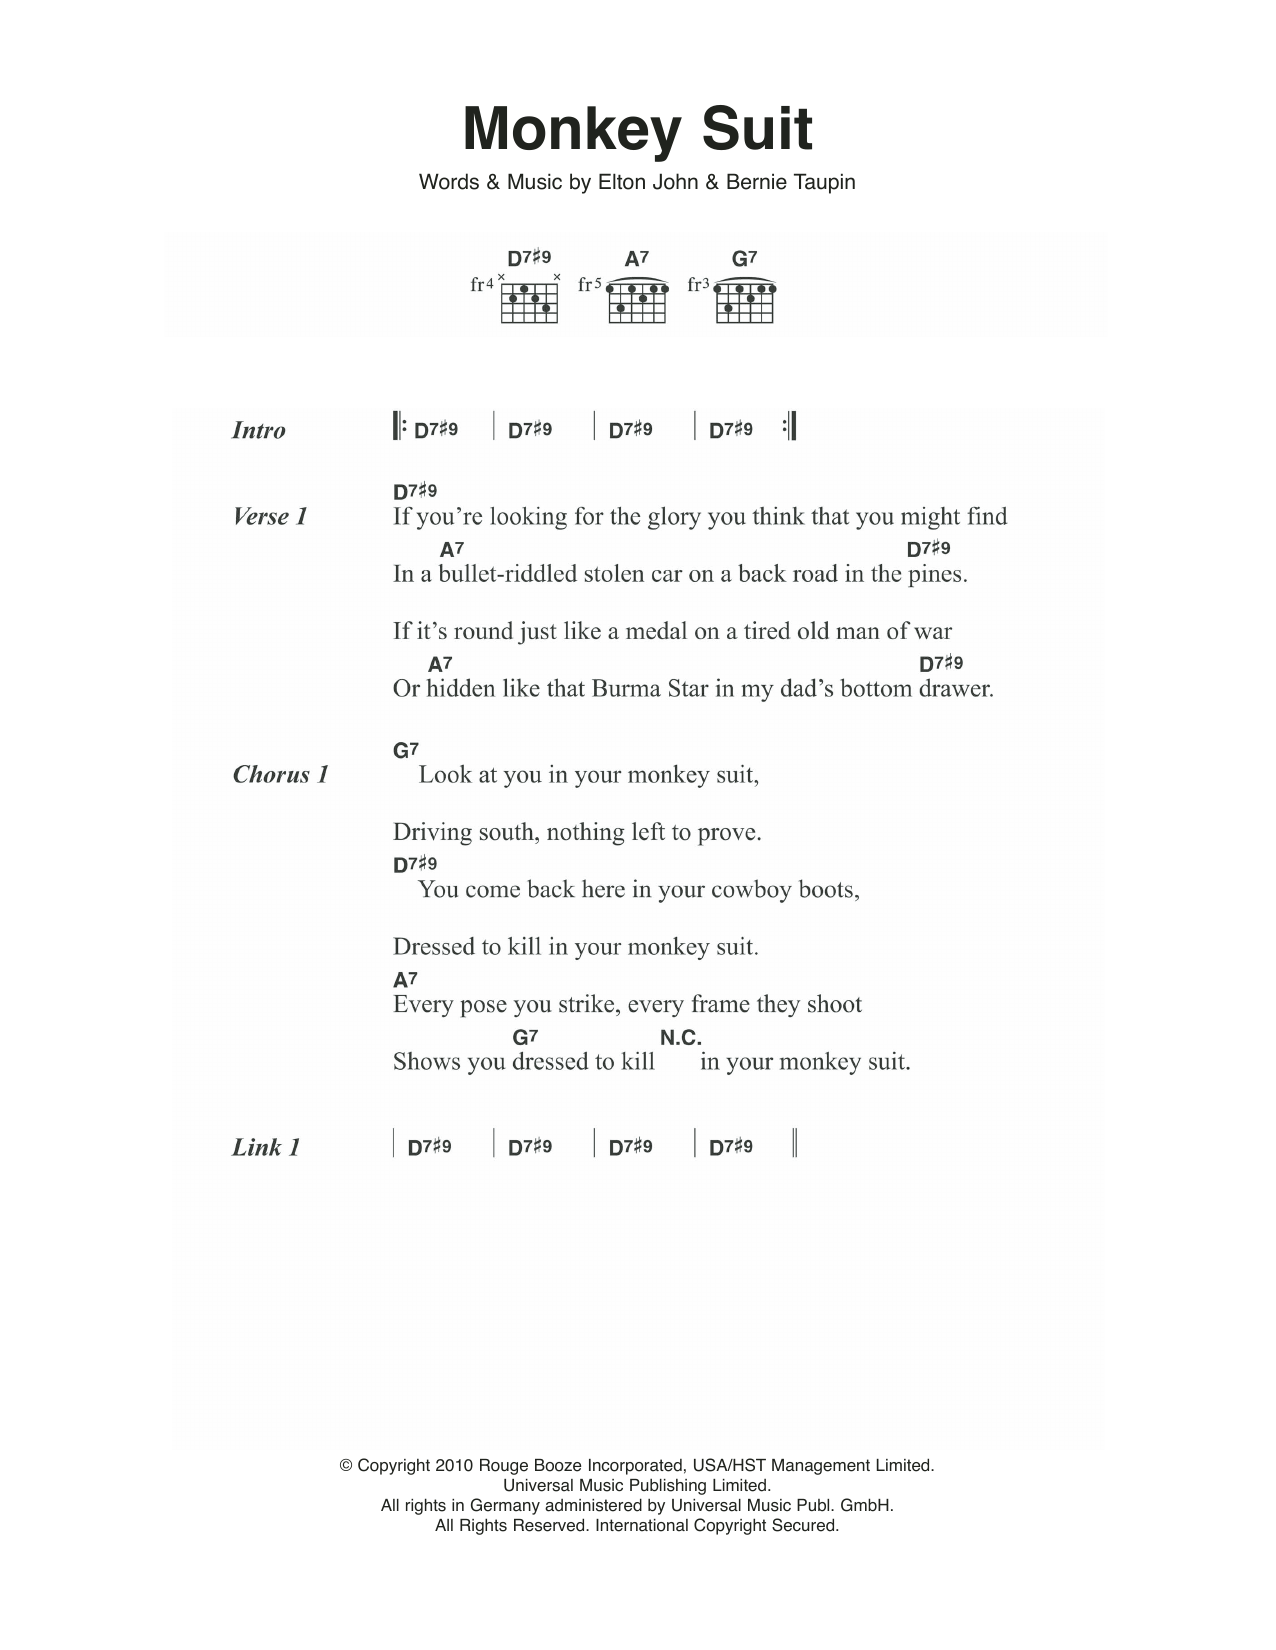 Elton John Monkey Suit Sheet Music Notes & Chords for Lyrics & Chords - Download or Print PDF